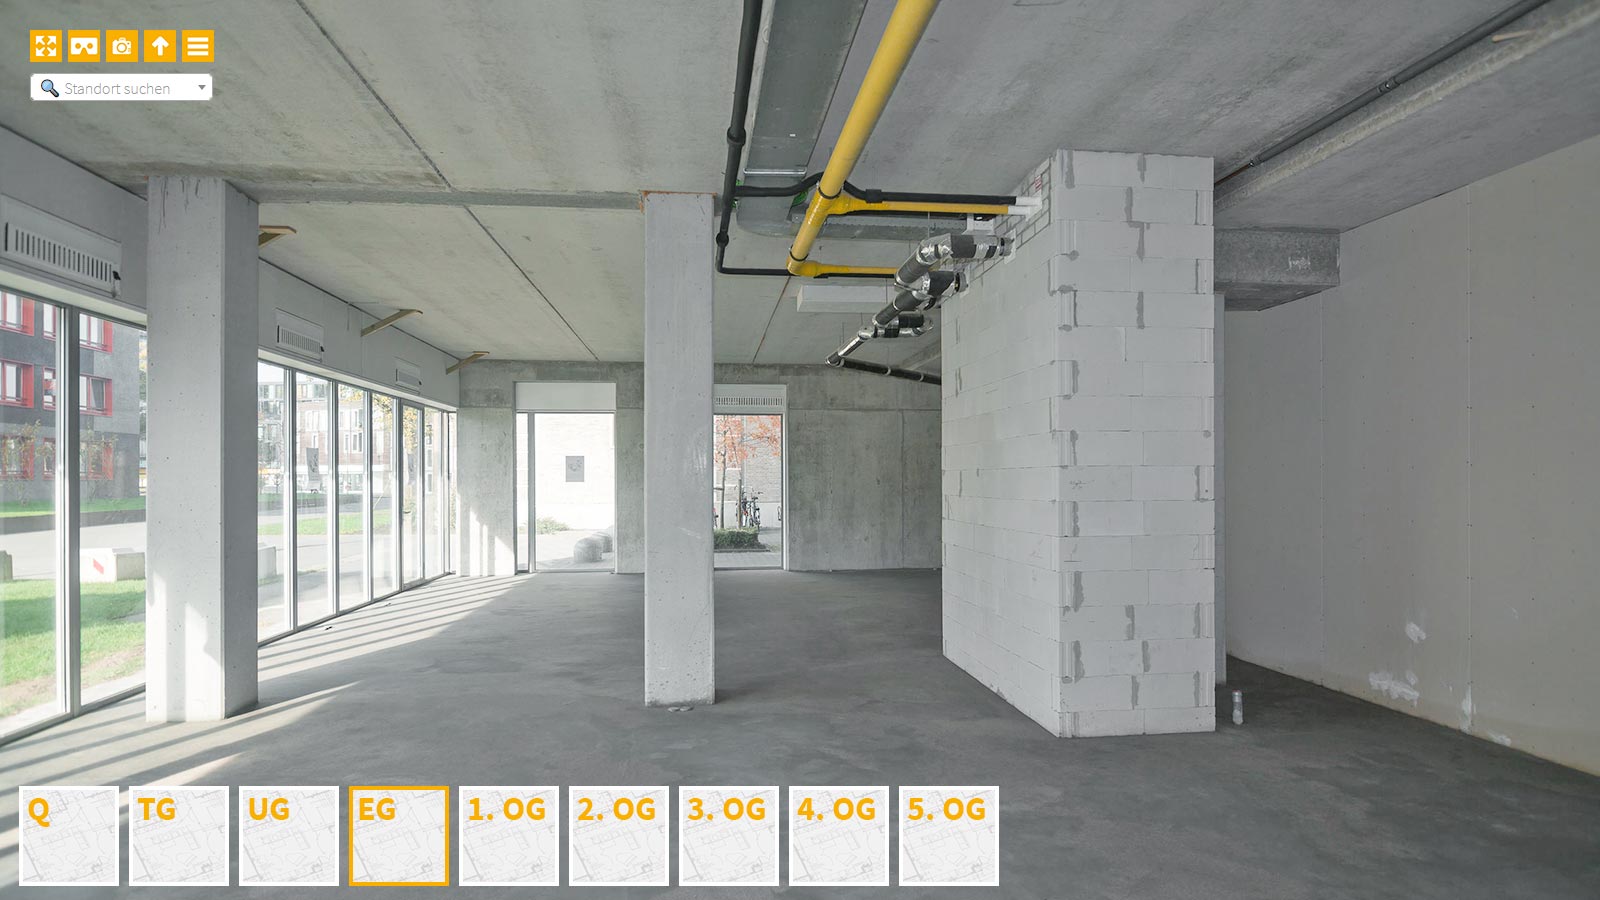 Baudokumentation 360 Grad bei gestörten Projekten in 


	


	


	


	


	


	


	


	


	


	Wuppertal









, Bilddokumentation als virtueller Rundgang